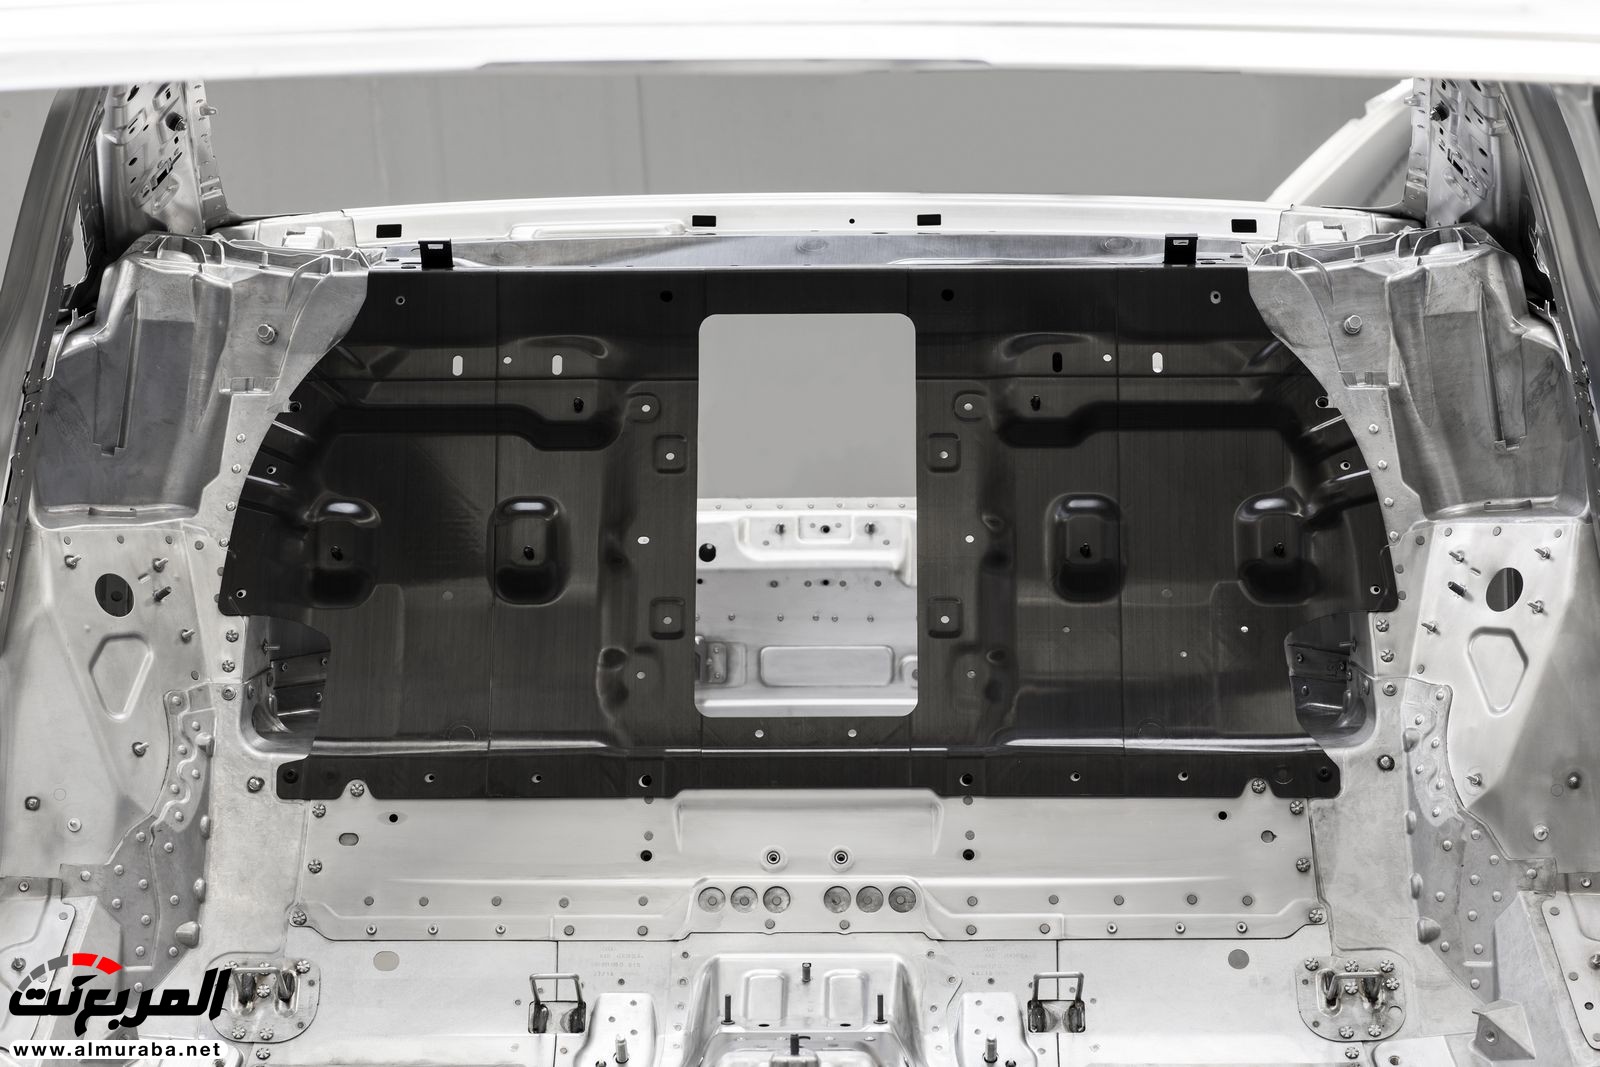 أودي A8 2018 الجديدة كلياً تكشف نفسها بتصميم وتقنيات متطورة "معلومات + 100 صورة" Audi A8 57